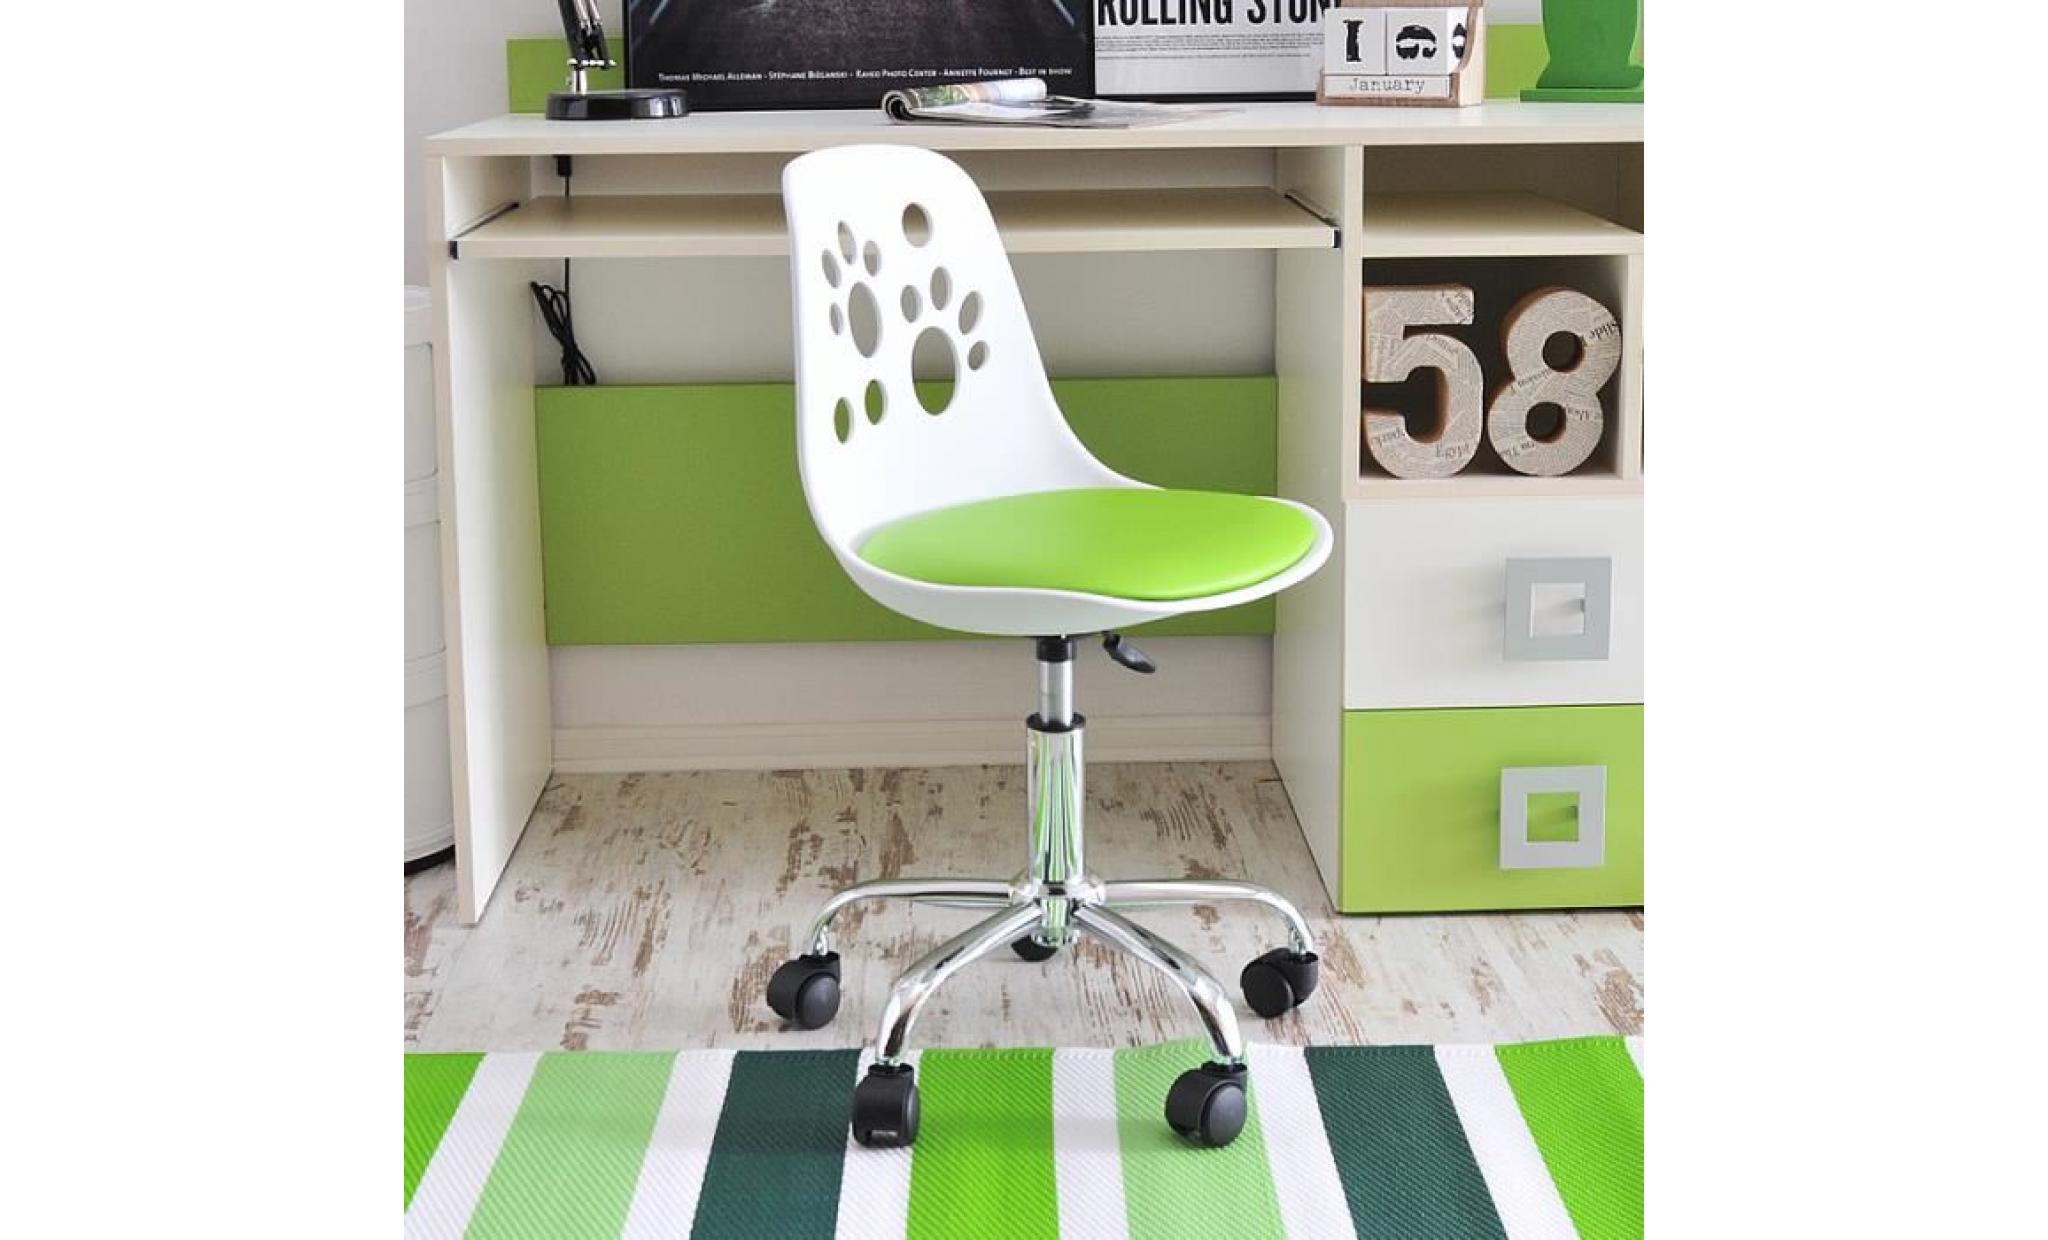 fauteuil d'enfant / chaise de bureau   foot   40 cm   citron vert   design moderne   réglable   pivotant